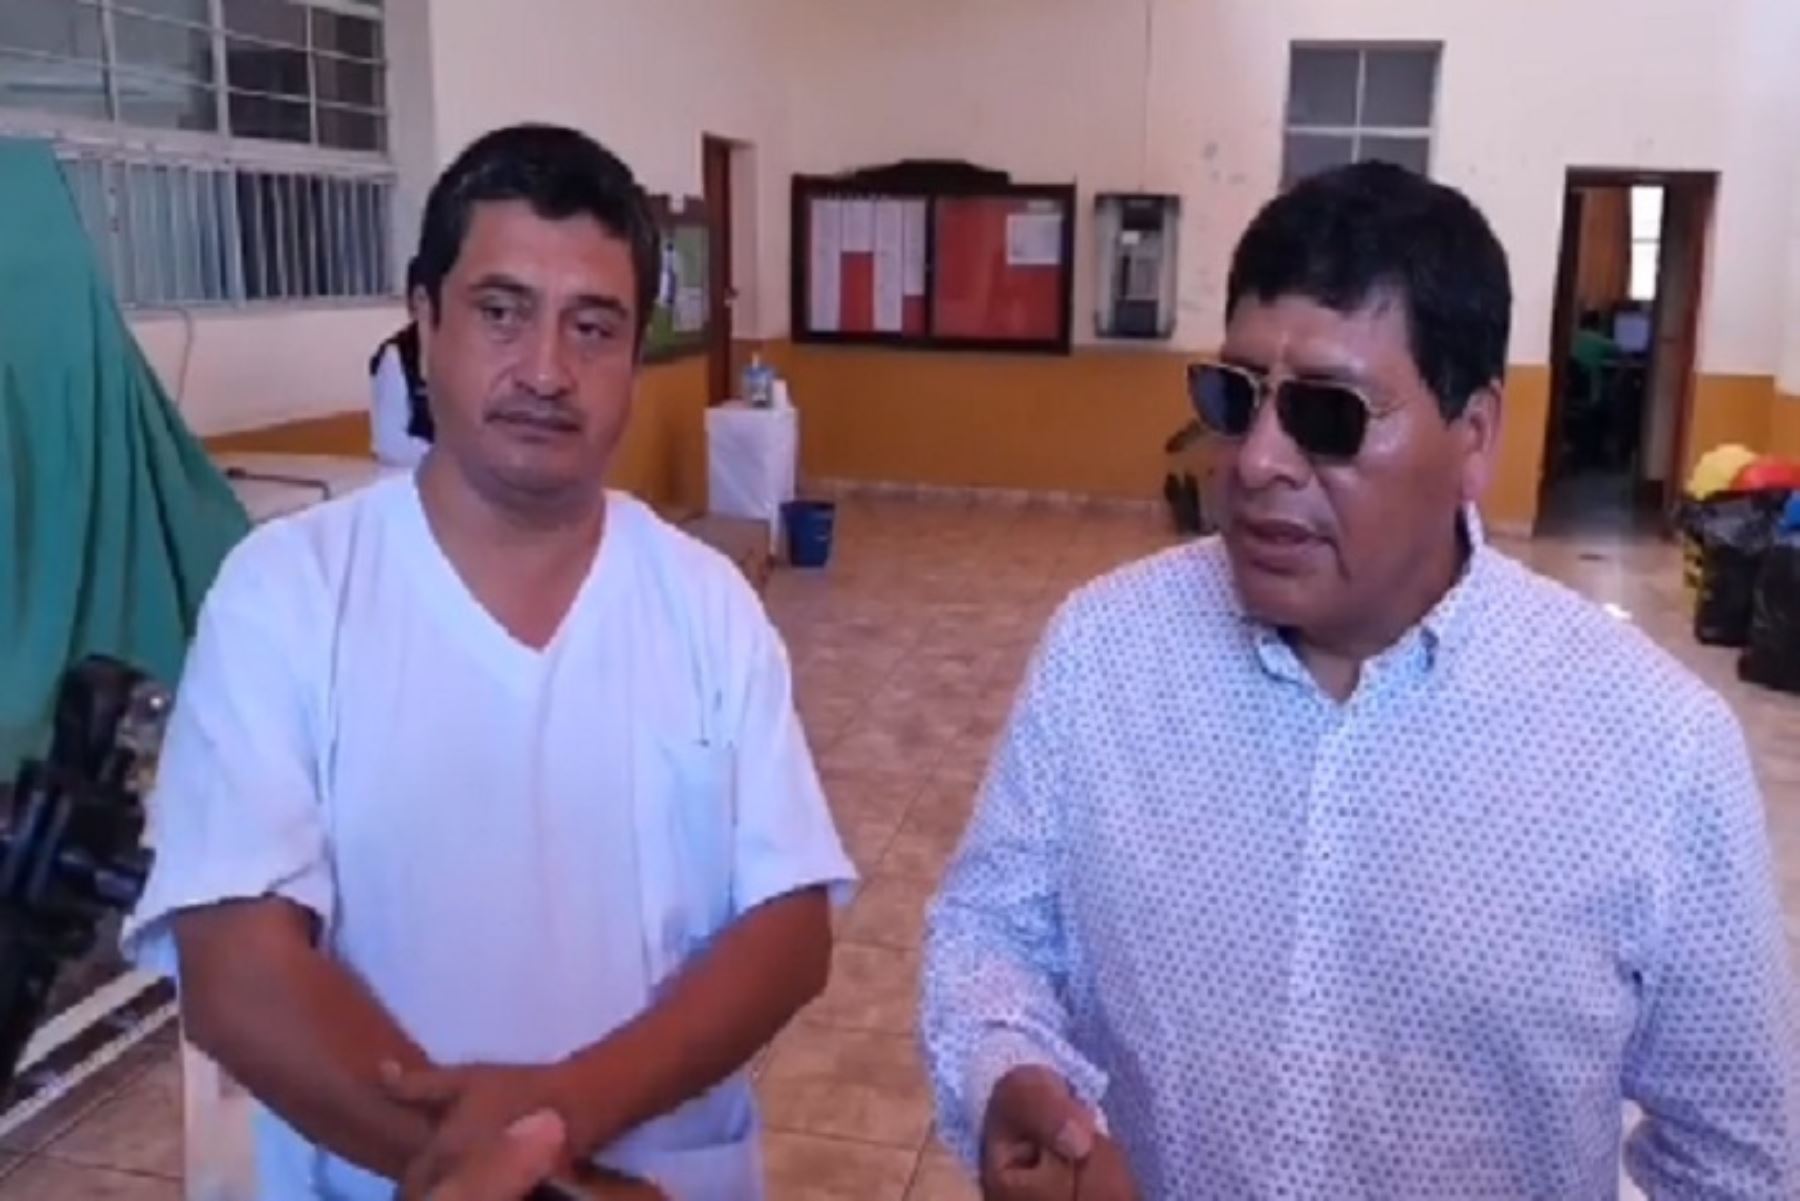 El titular de la Diresa Ica, Marco Cabrera Pimentel y el gobernador regional, Javier Gallegos, manifestaron que se ha venido alarmando a la población por parte de irresponsables “comunicadores sociales”.